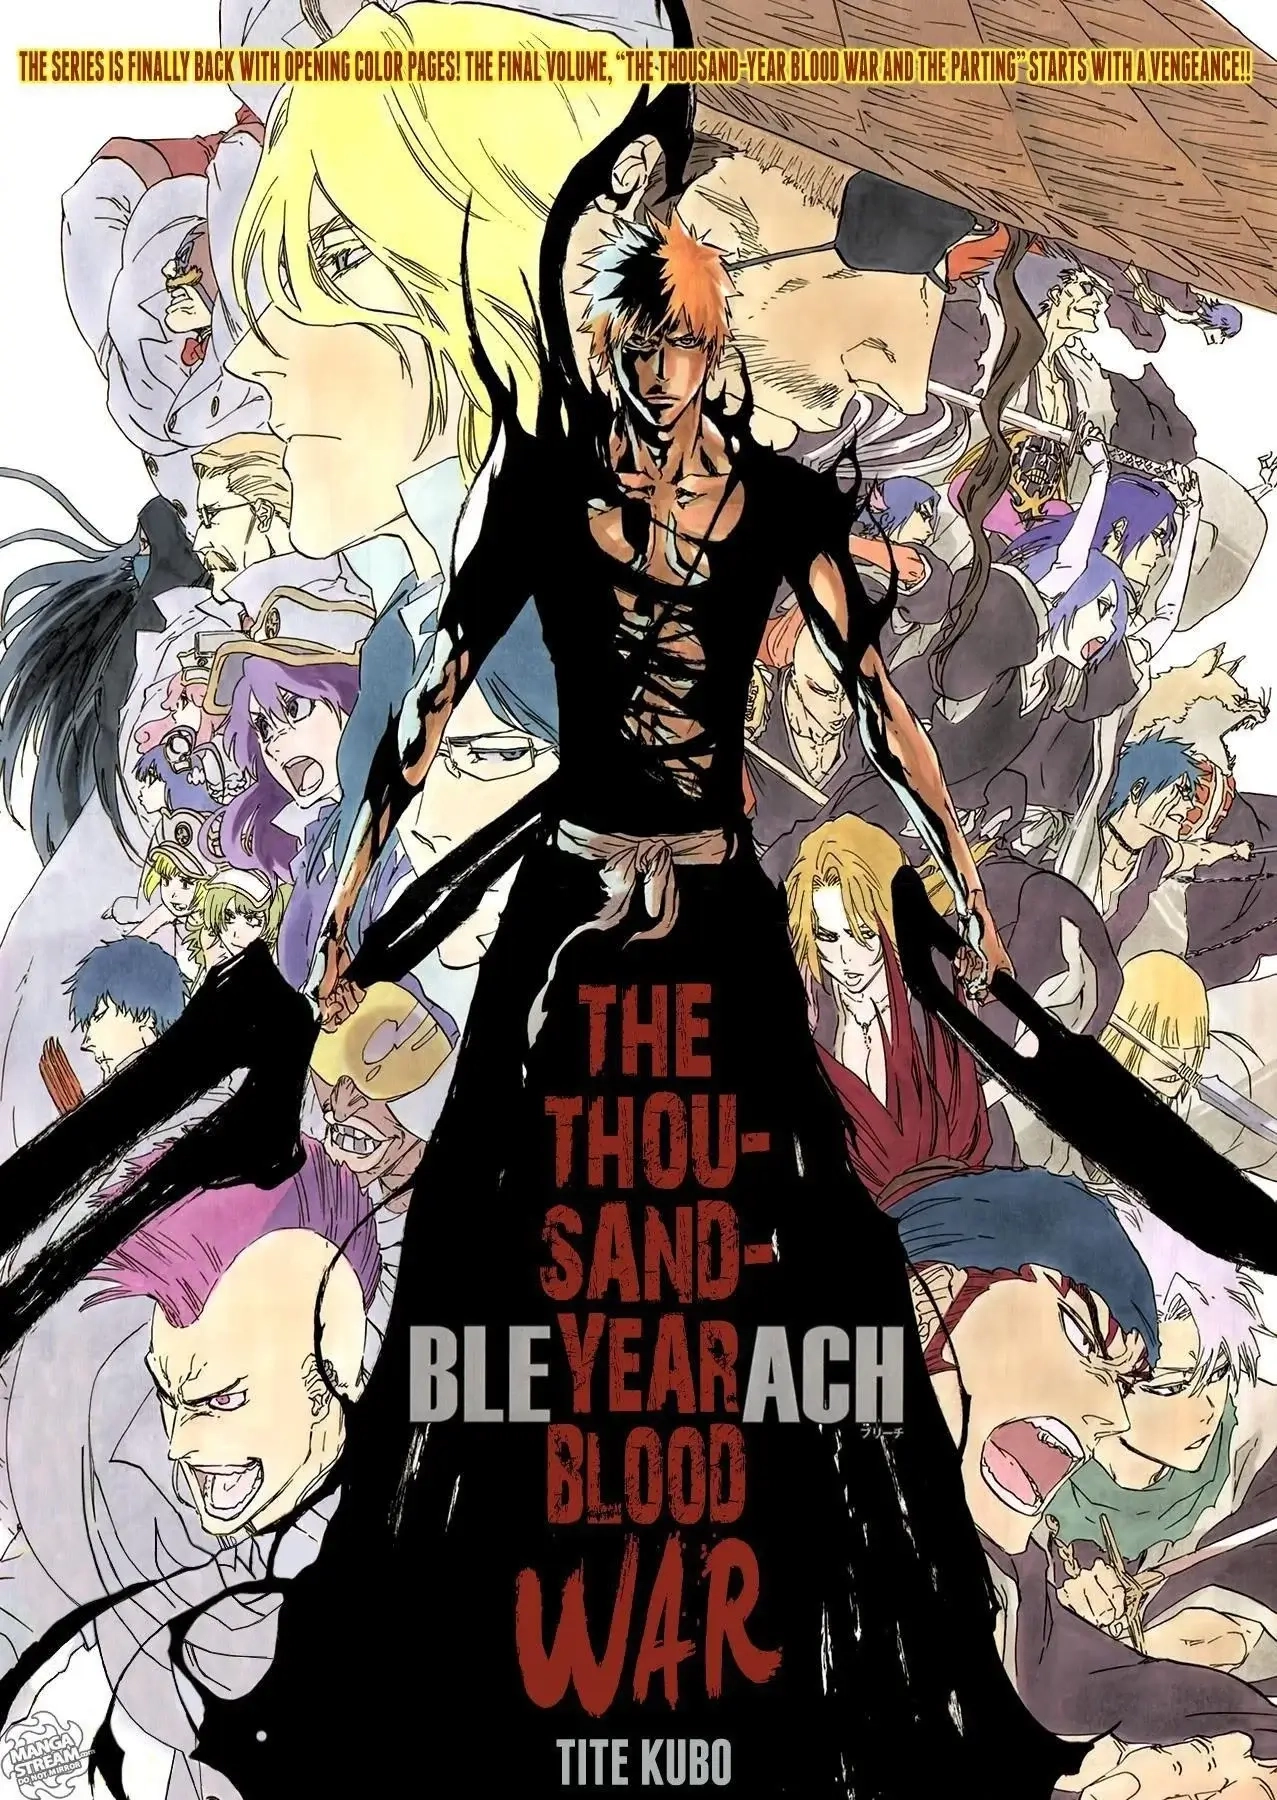 El arco final de Bleach: Thousand-Year Blood War se estrena en anime el 10 de octubre